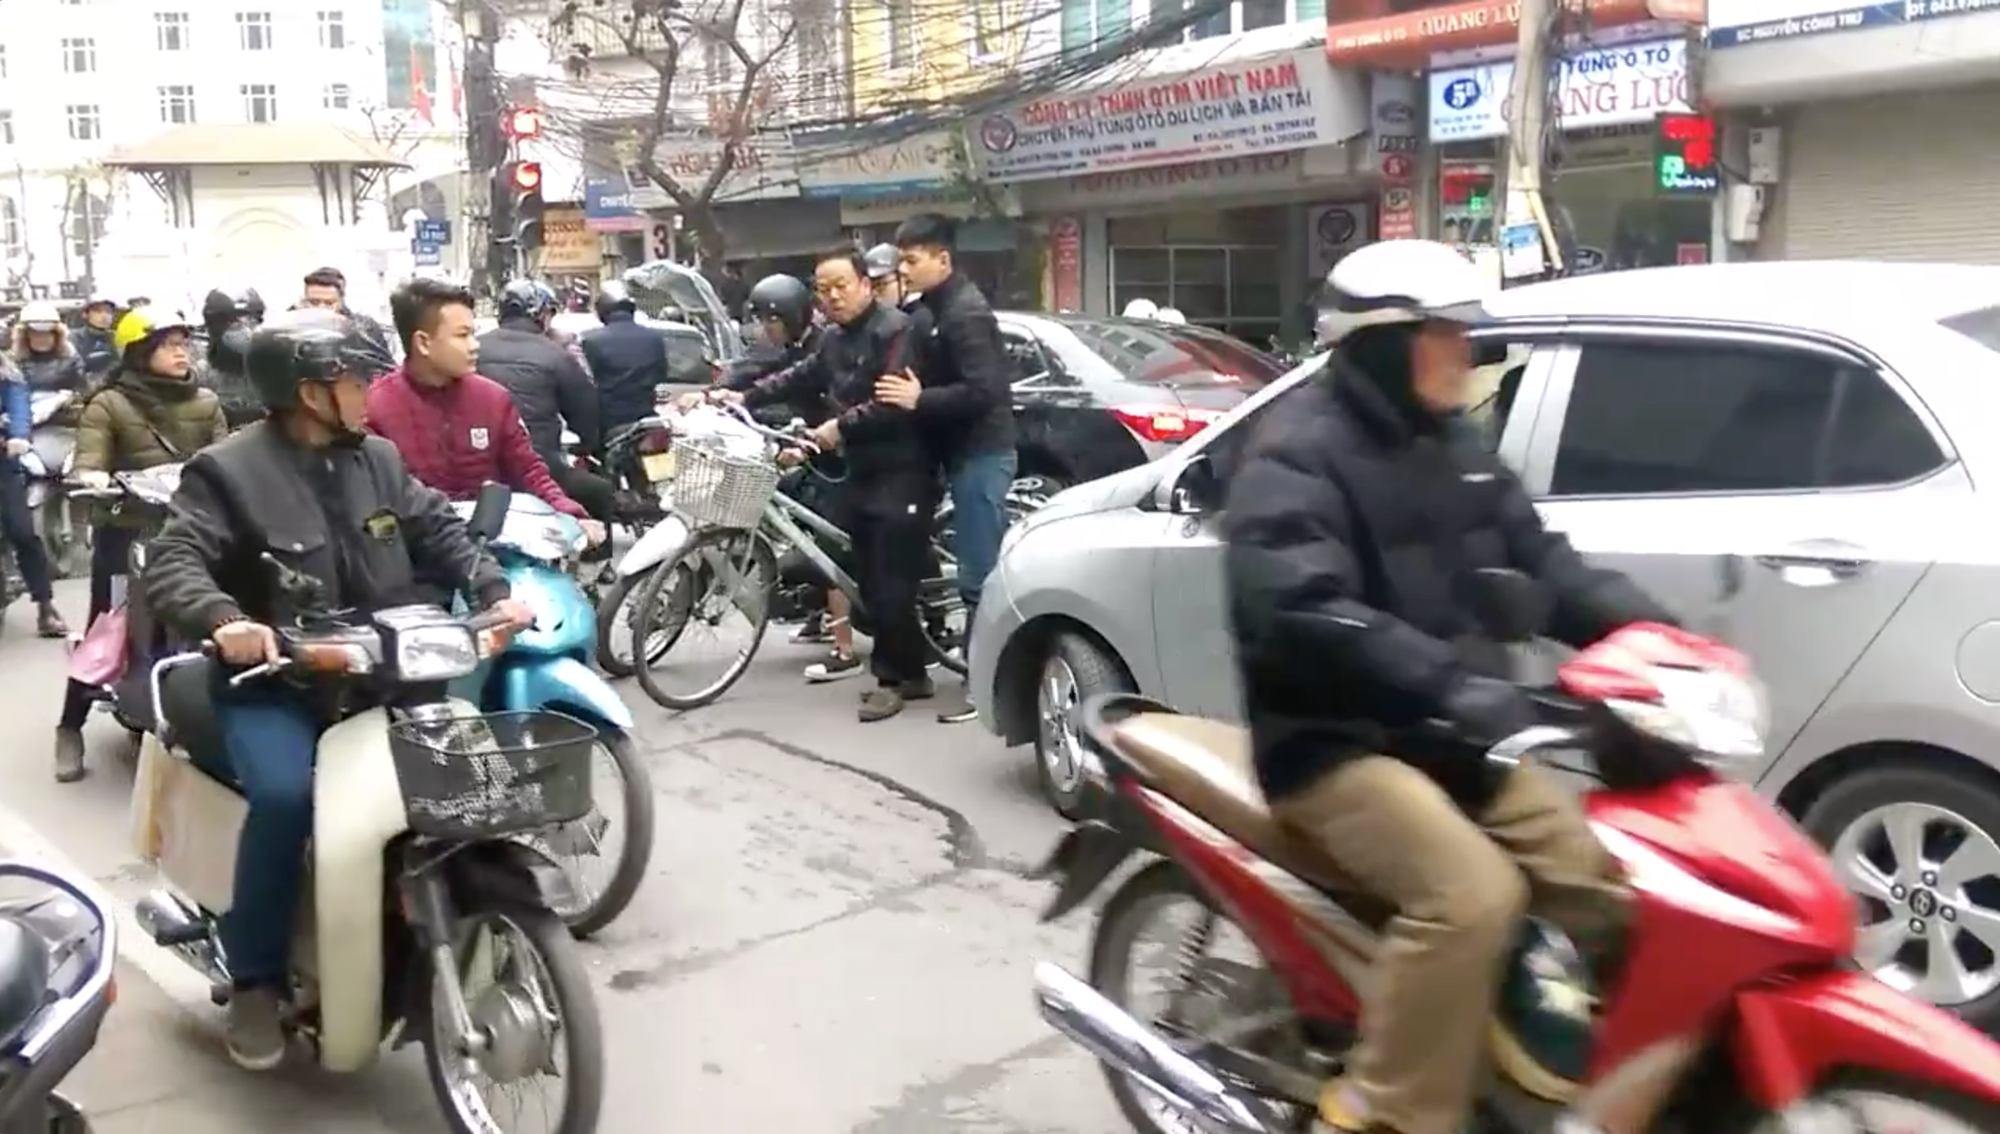 Hà Nội: Người đàn ông đi xe đạp bỗng dưng chặn đầu hàng loạt xe ô tô gây ùn tắc nghiêm trọng - Ảnh 2.